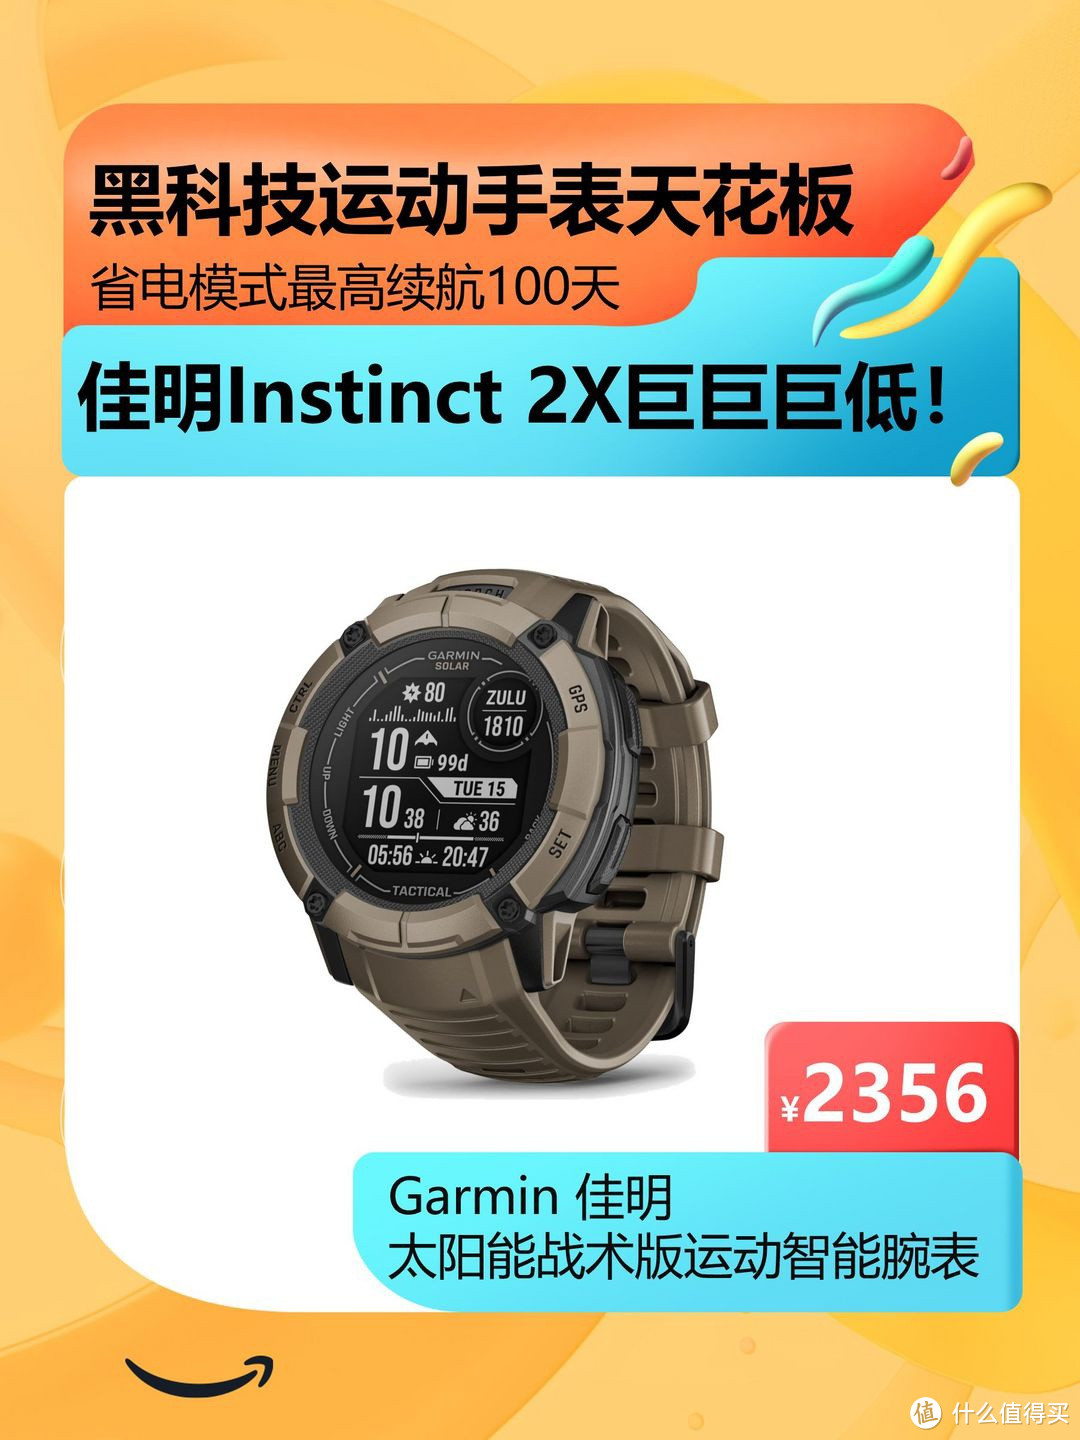 【618优惠】2356元 黑科技!!佳明运动手表 Instinct 2X Solar-战术版 运动手表太低了